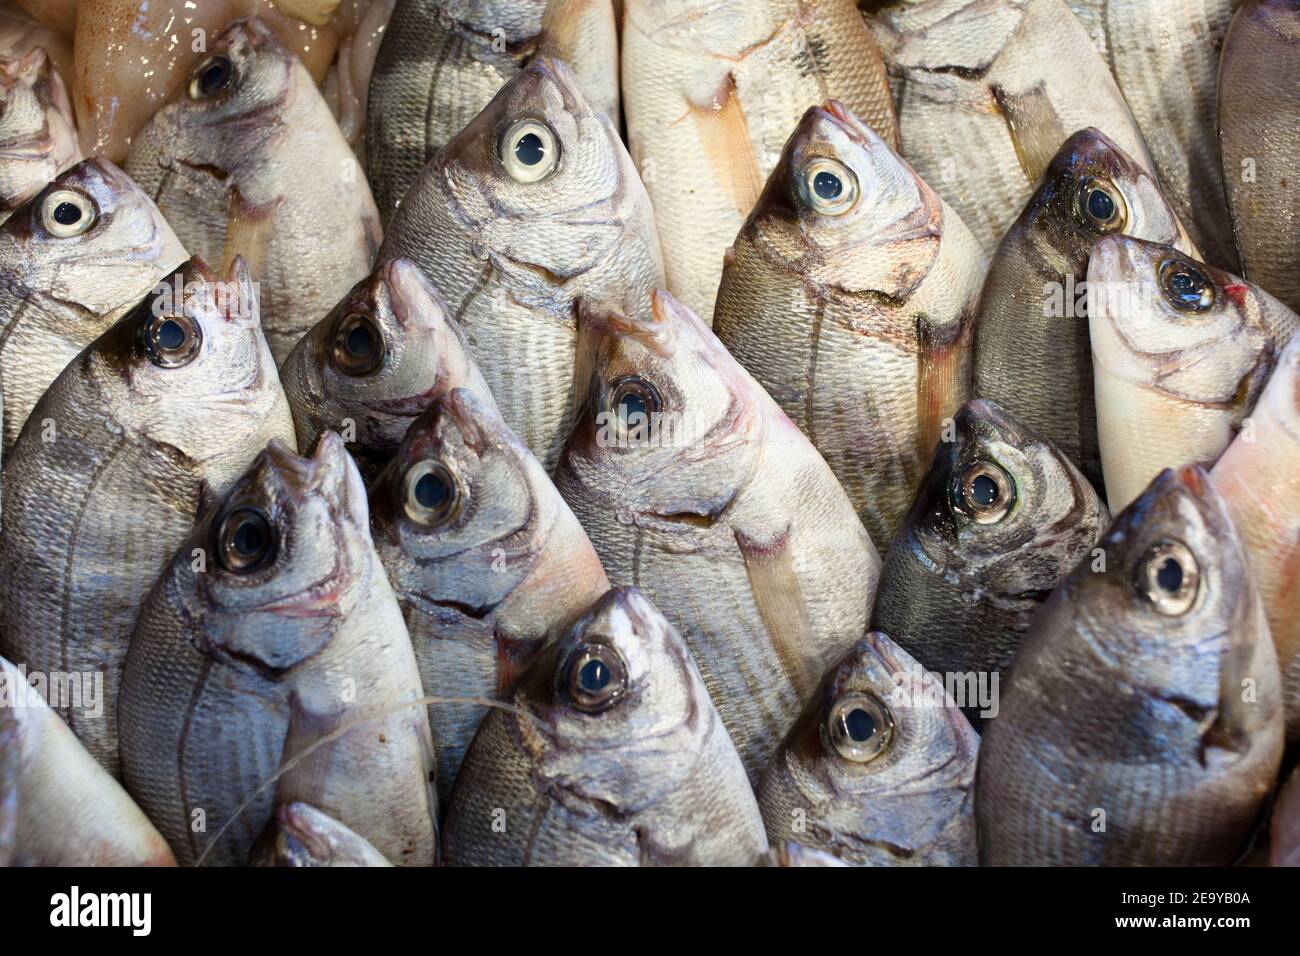 Una scena di un mercato del pesce con molti pesci freschi disposti su un vassoio con la bocca aperta. Foto Stock